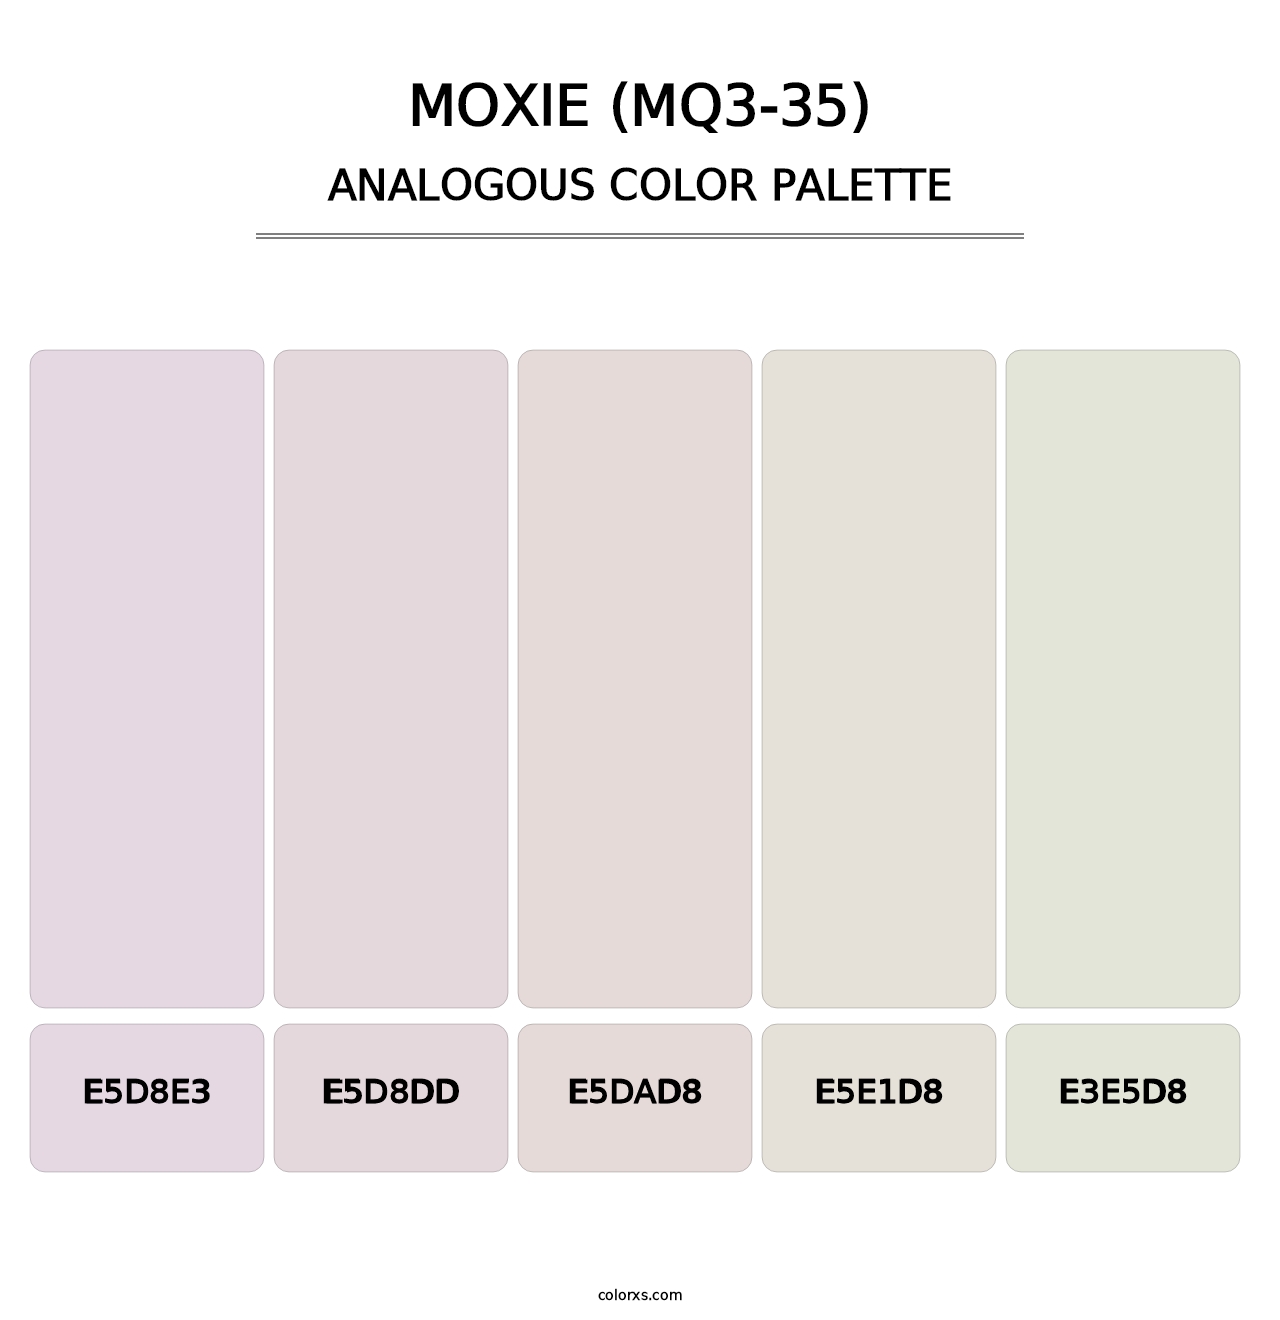 Moxie (MQ3-35) - Analogous Color Palette